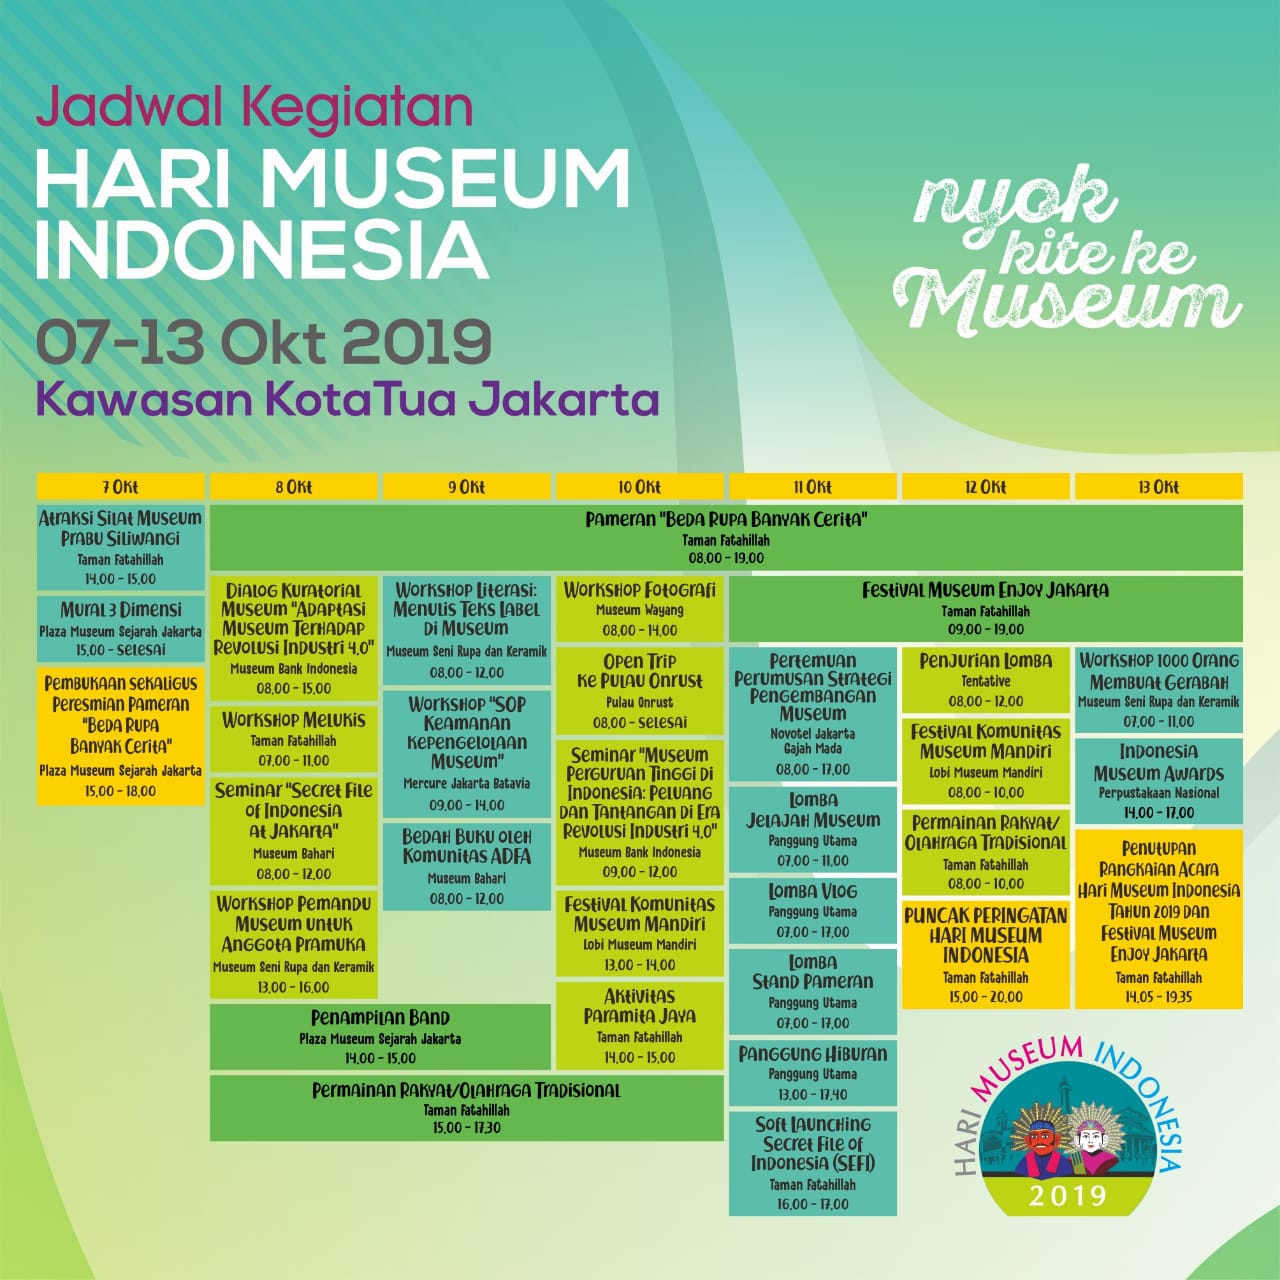 Jadwal Lengkap Perayaan Hari Museum 2019. Nyok kite ke museum!